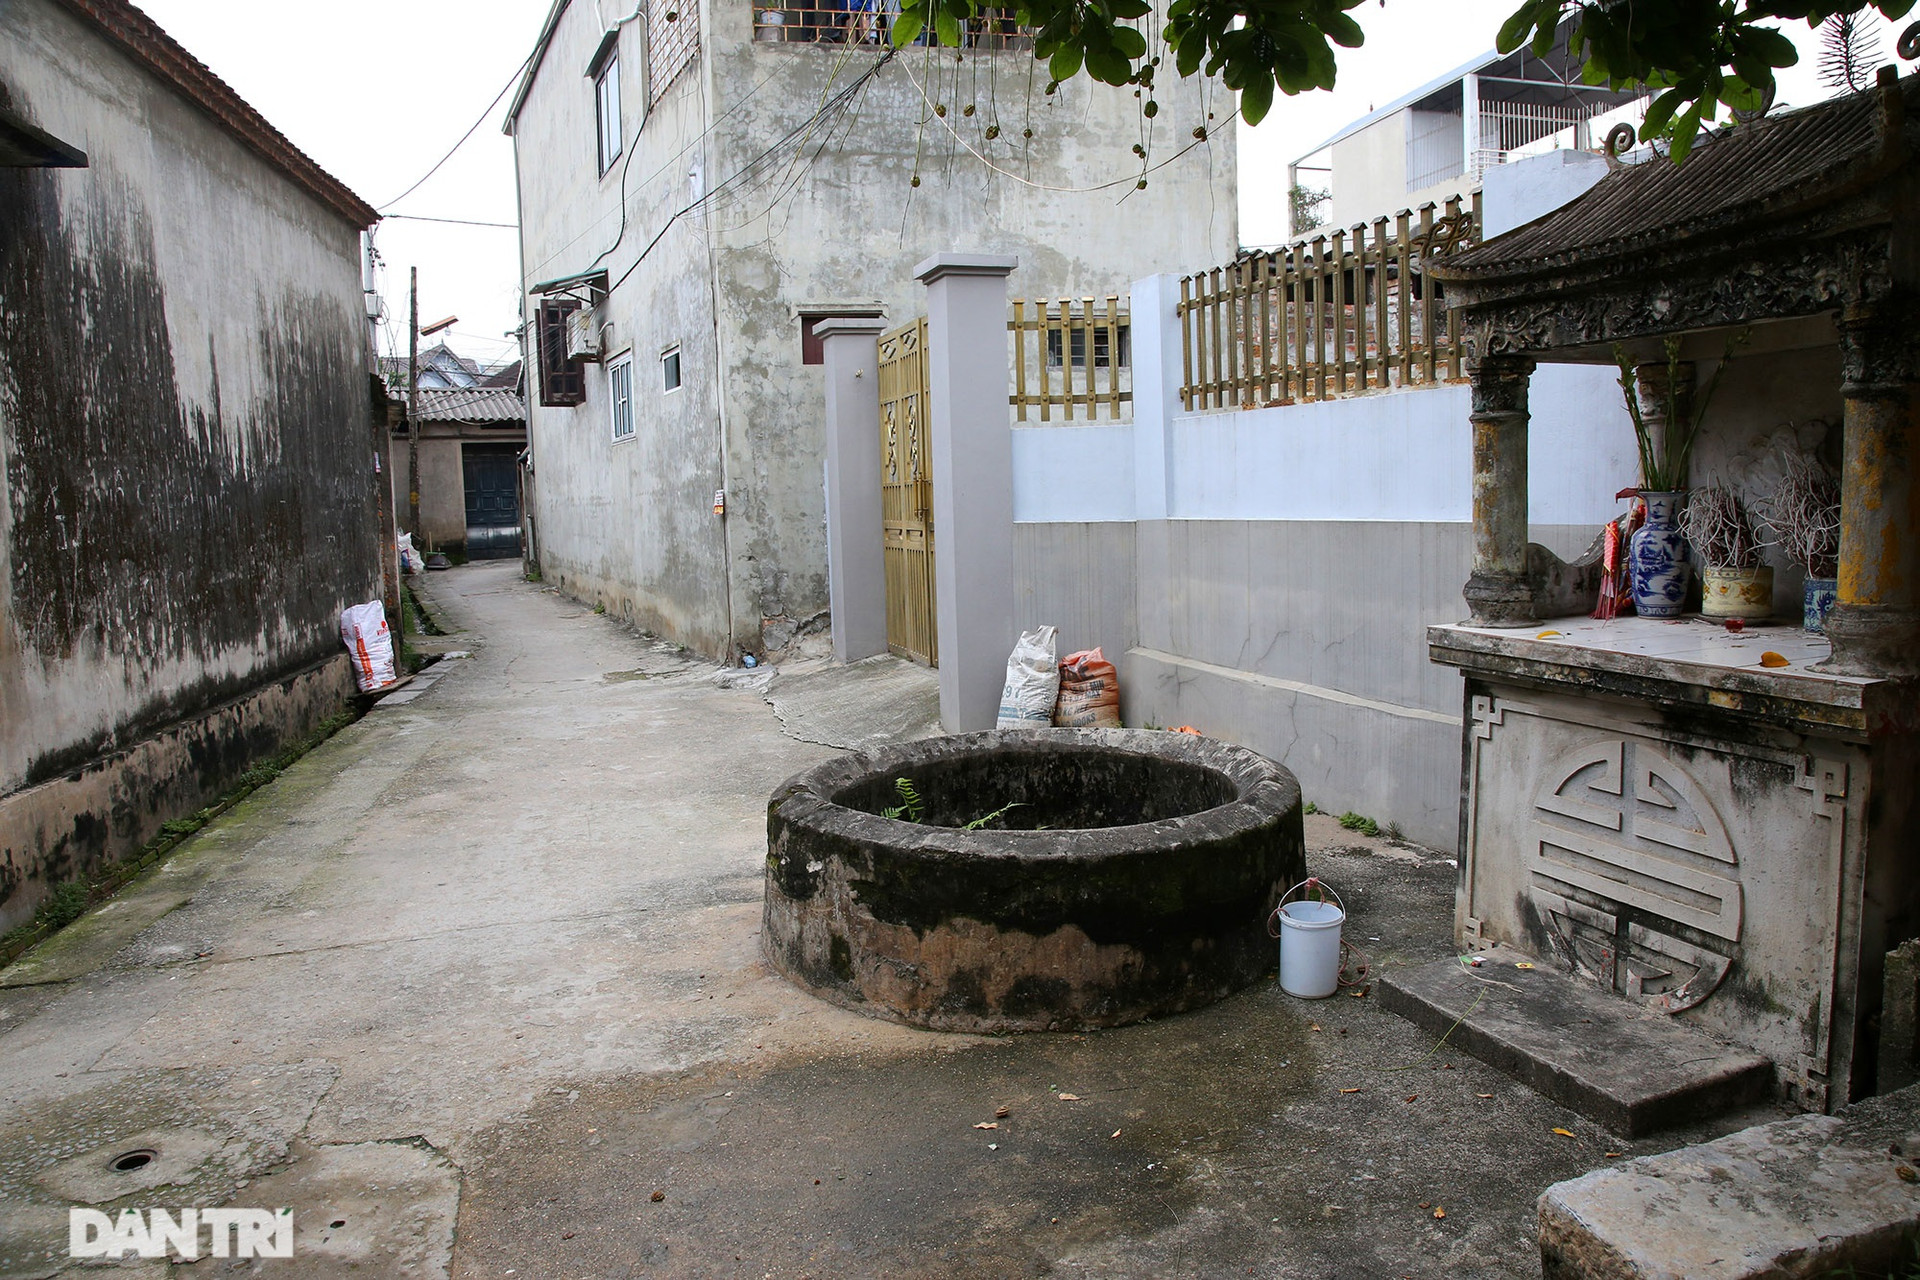 Dù theo huyền tích nào thì làng An Tràng xưa (nay là Yên Trường) có 99 giếng lớn nhỏ khác nhau, đến nay đã bị lấp dần bởi sự đô thị hoá. Giếng trong làng vẫn còn khá nhiều, dễ dàng bắt gặp nằm rải rác trên khắp các con đường làng, bên cạnh là một ban thờ nhỏ.